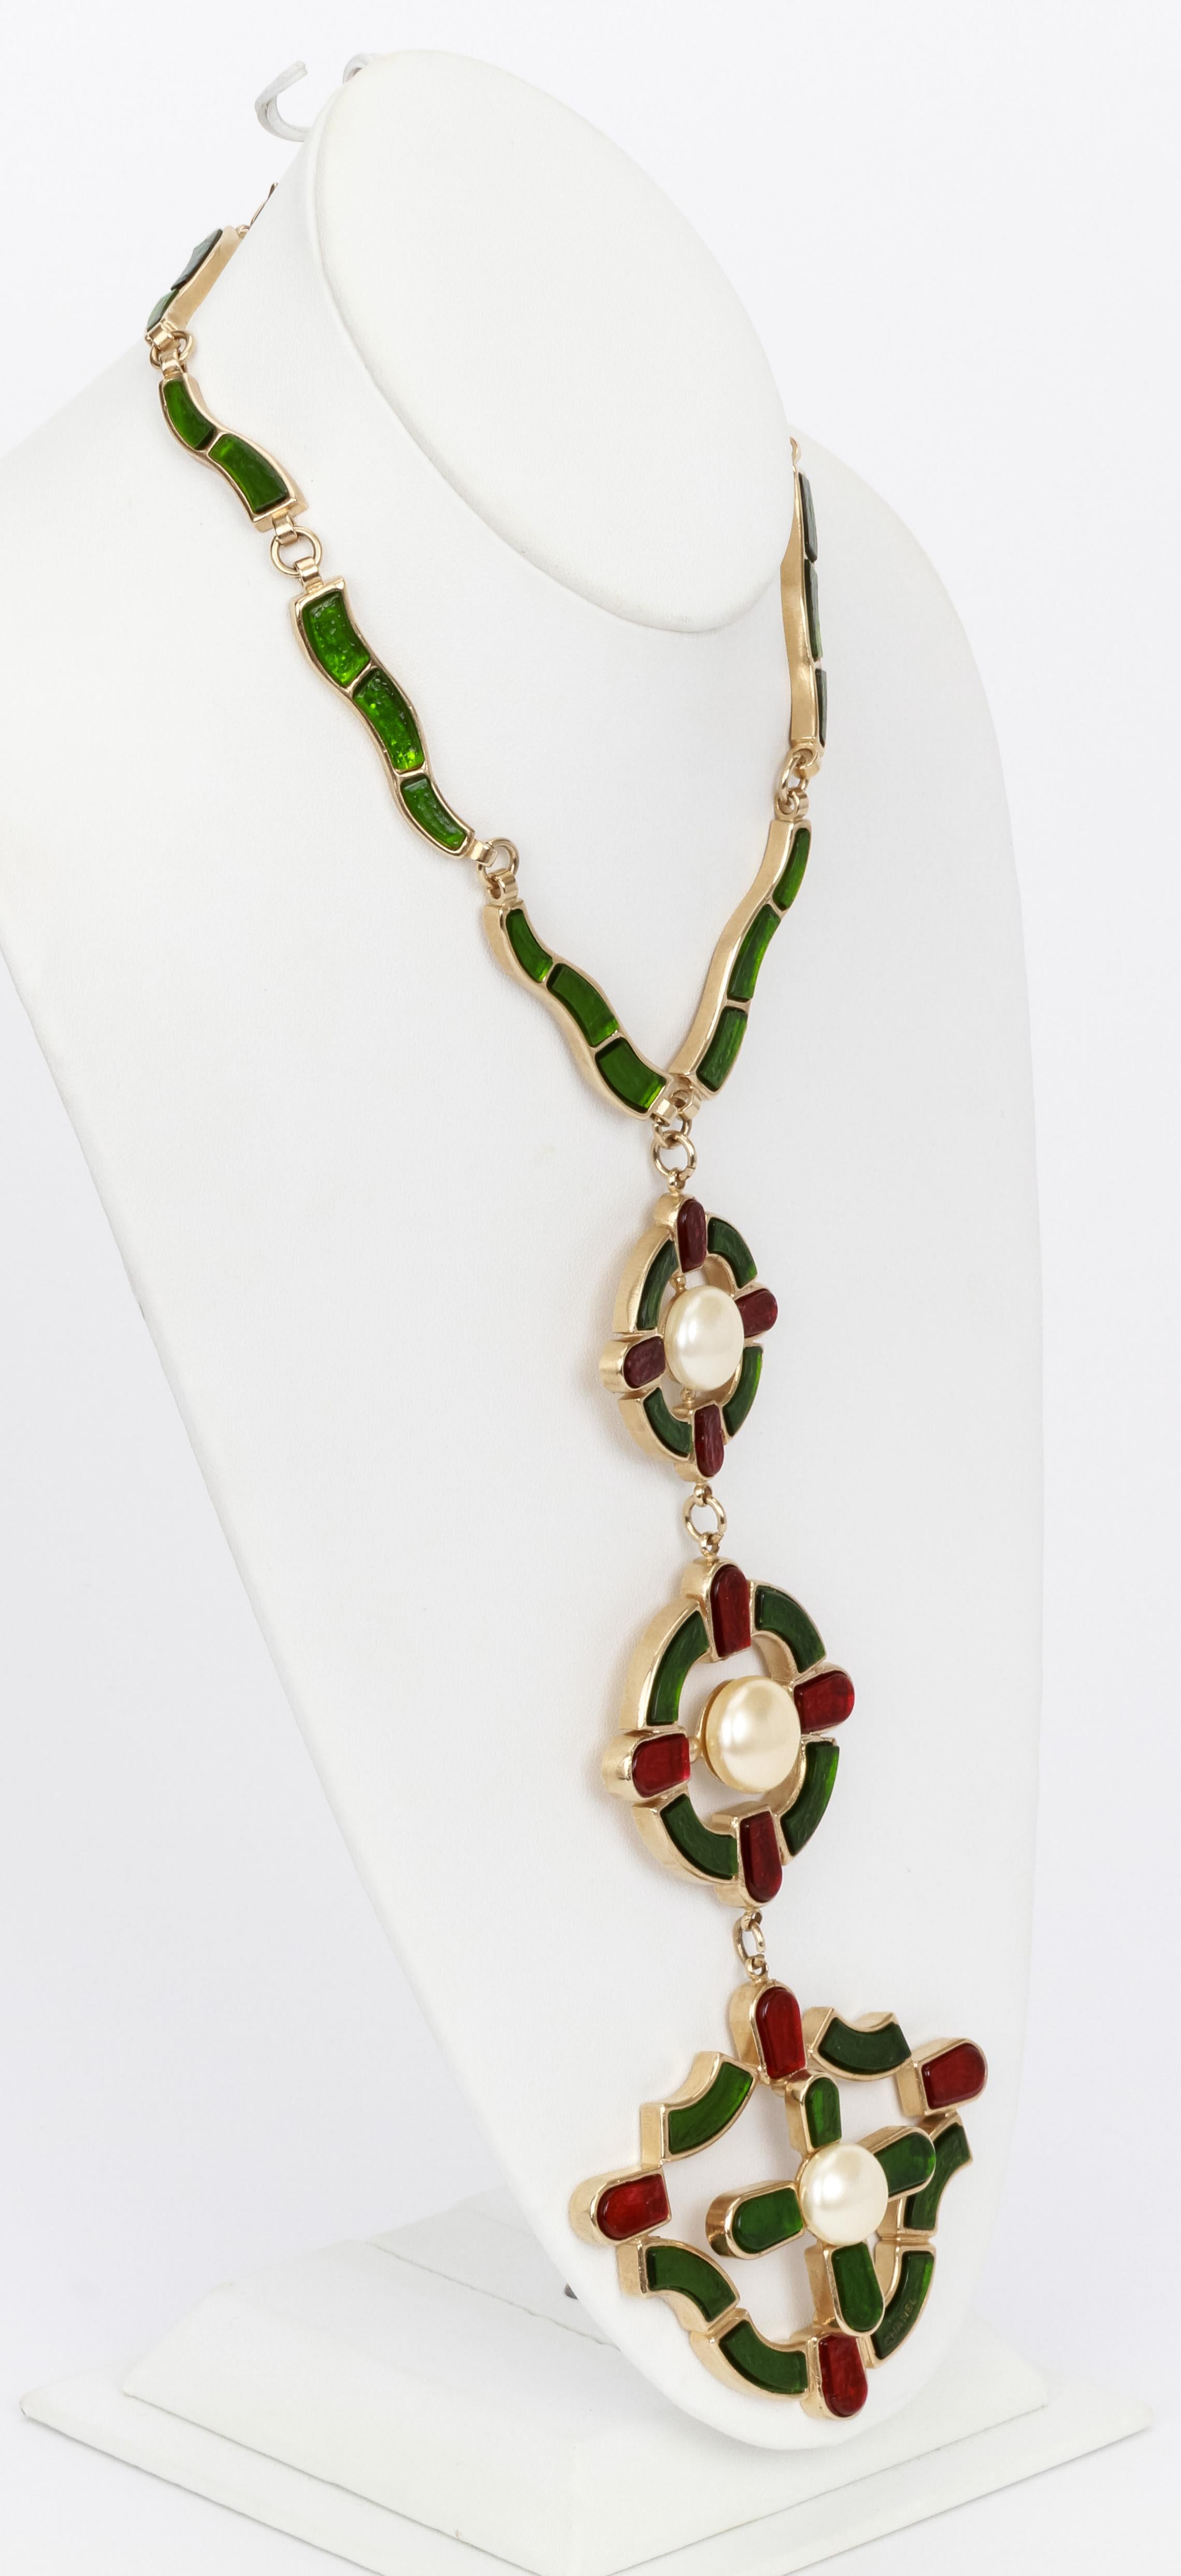 Important collier Chanel avec triple pendentif, gripoix vert et rouge foncé, chaque pendentif conçu autour d'une perle bombe'. longueur réglable, pochette et boîte d'origine, collier 10